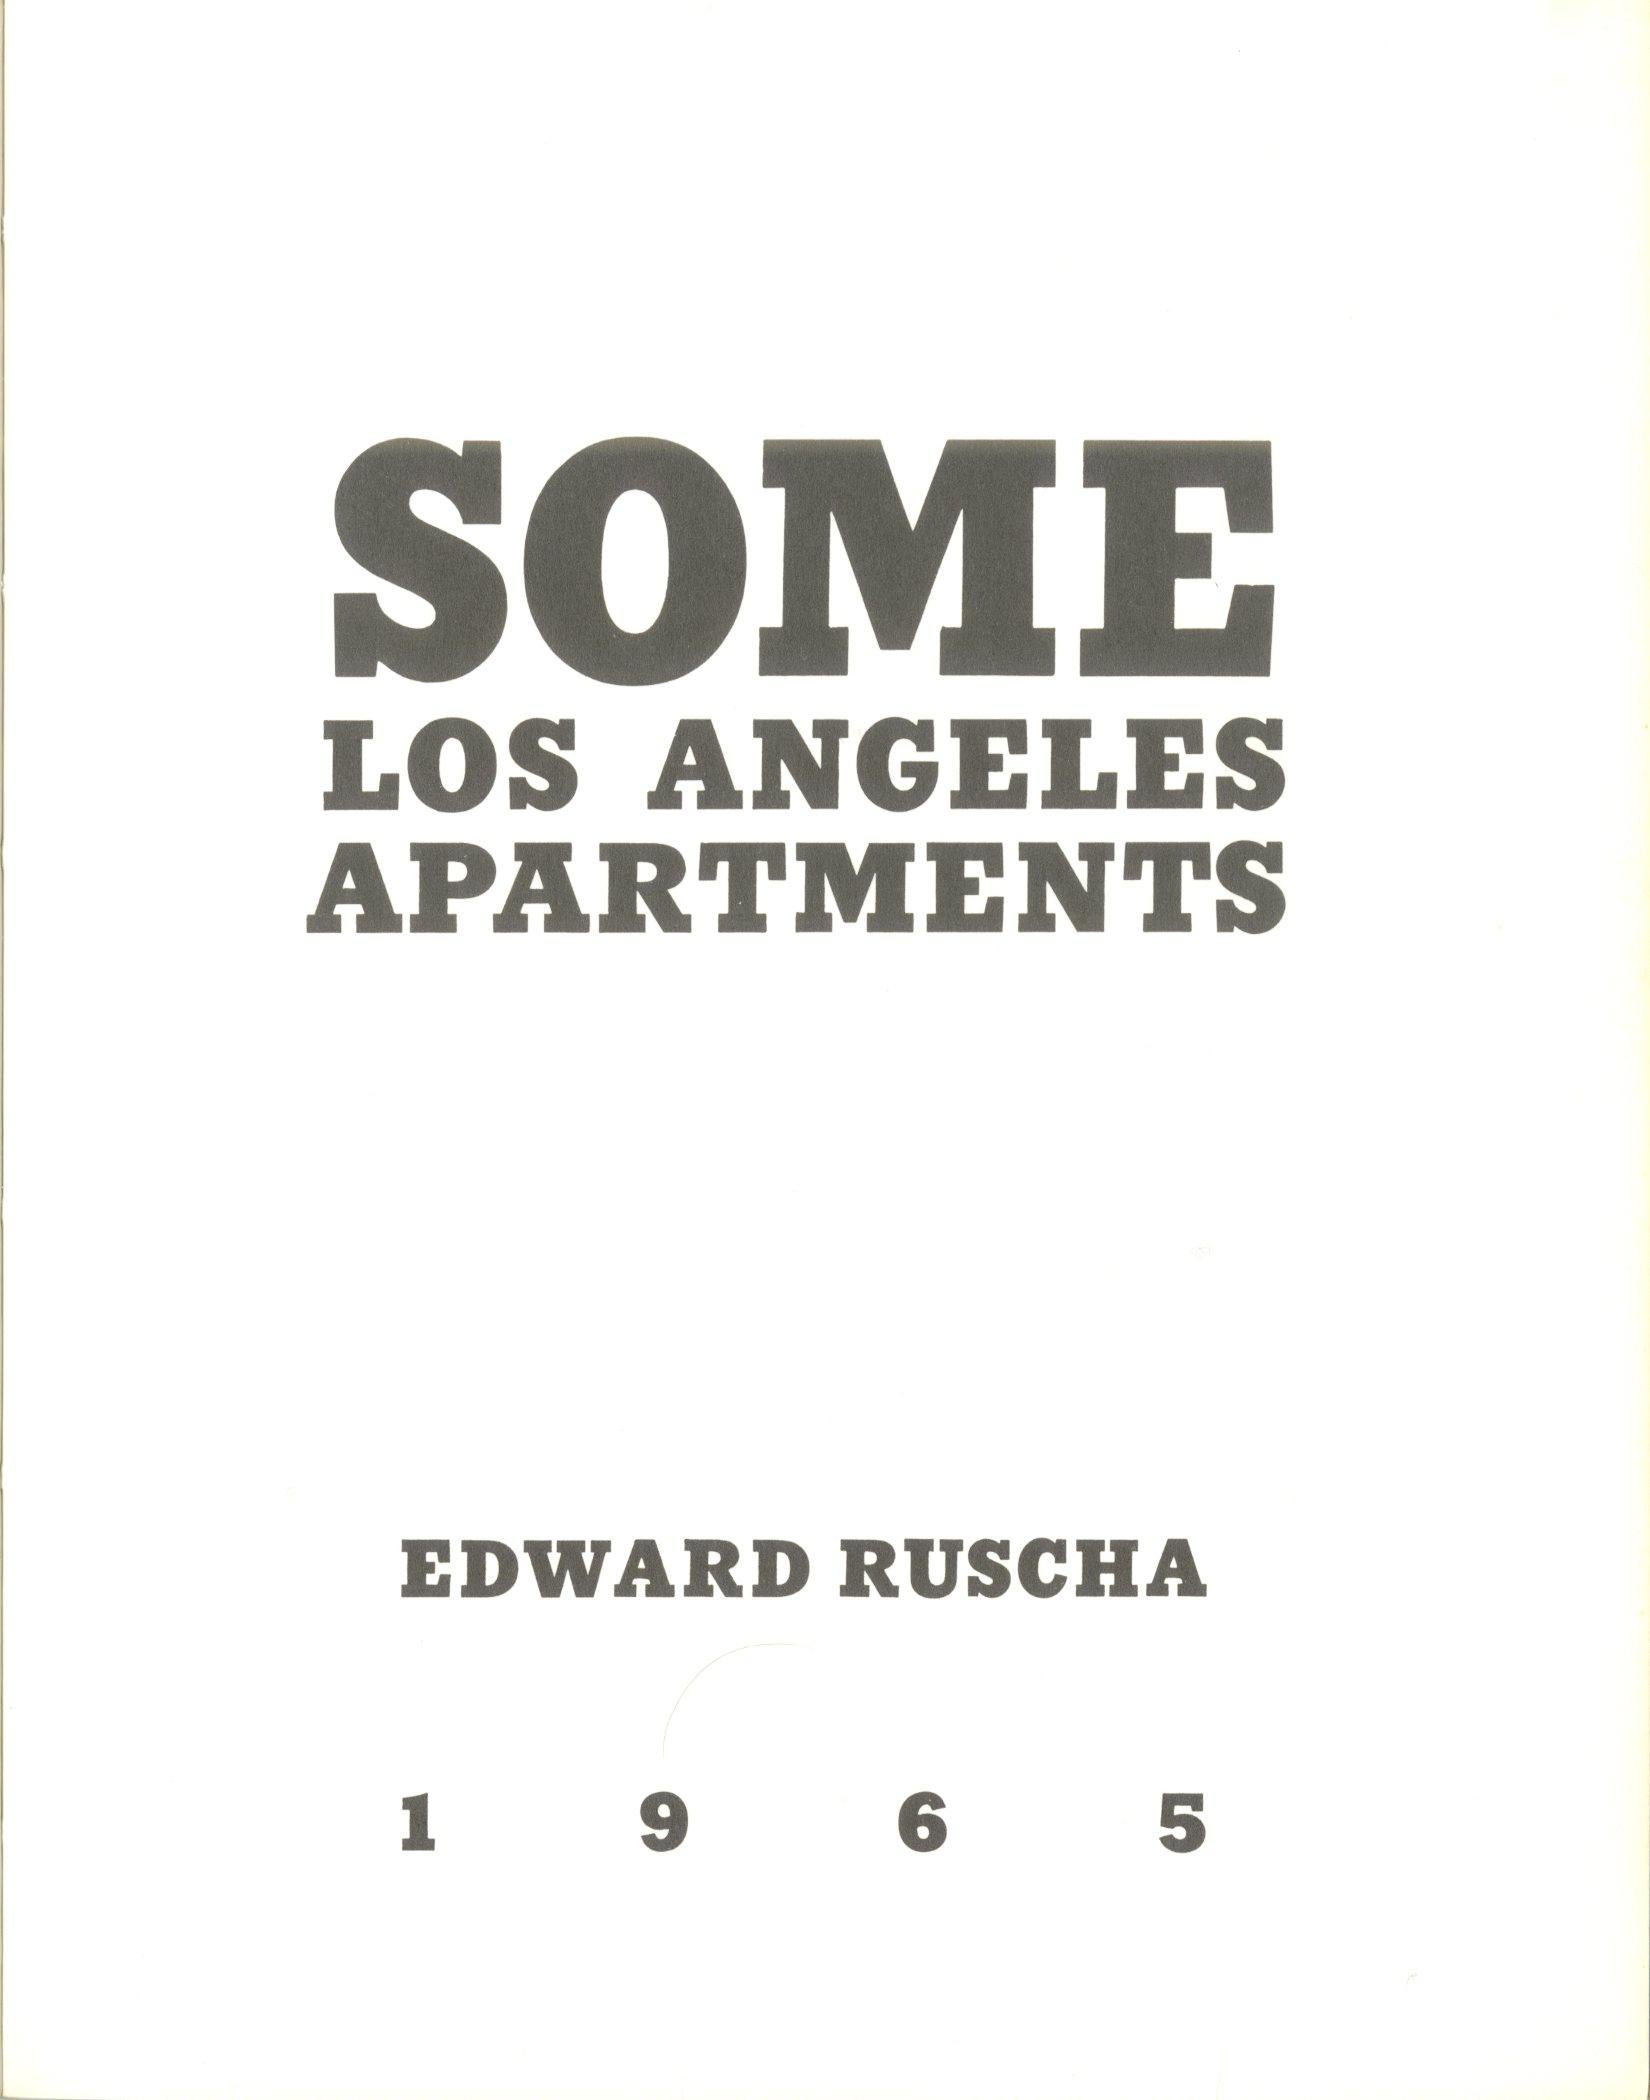 Einige apartments in Los Angeles – wahrheitsgetreu, angegebene 1. Auflage von nur 700 Künstlerbüchern (Pop-Art), Print, von Ed Ruscha